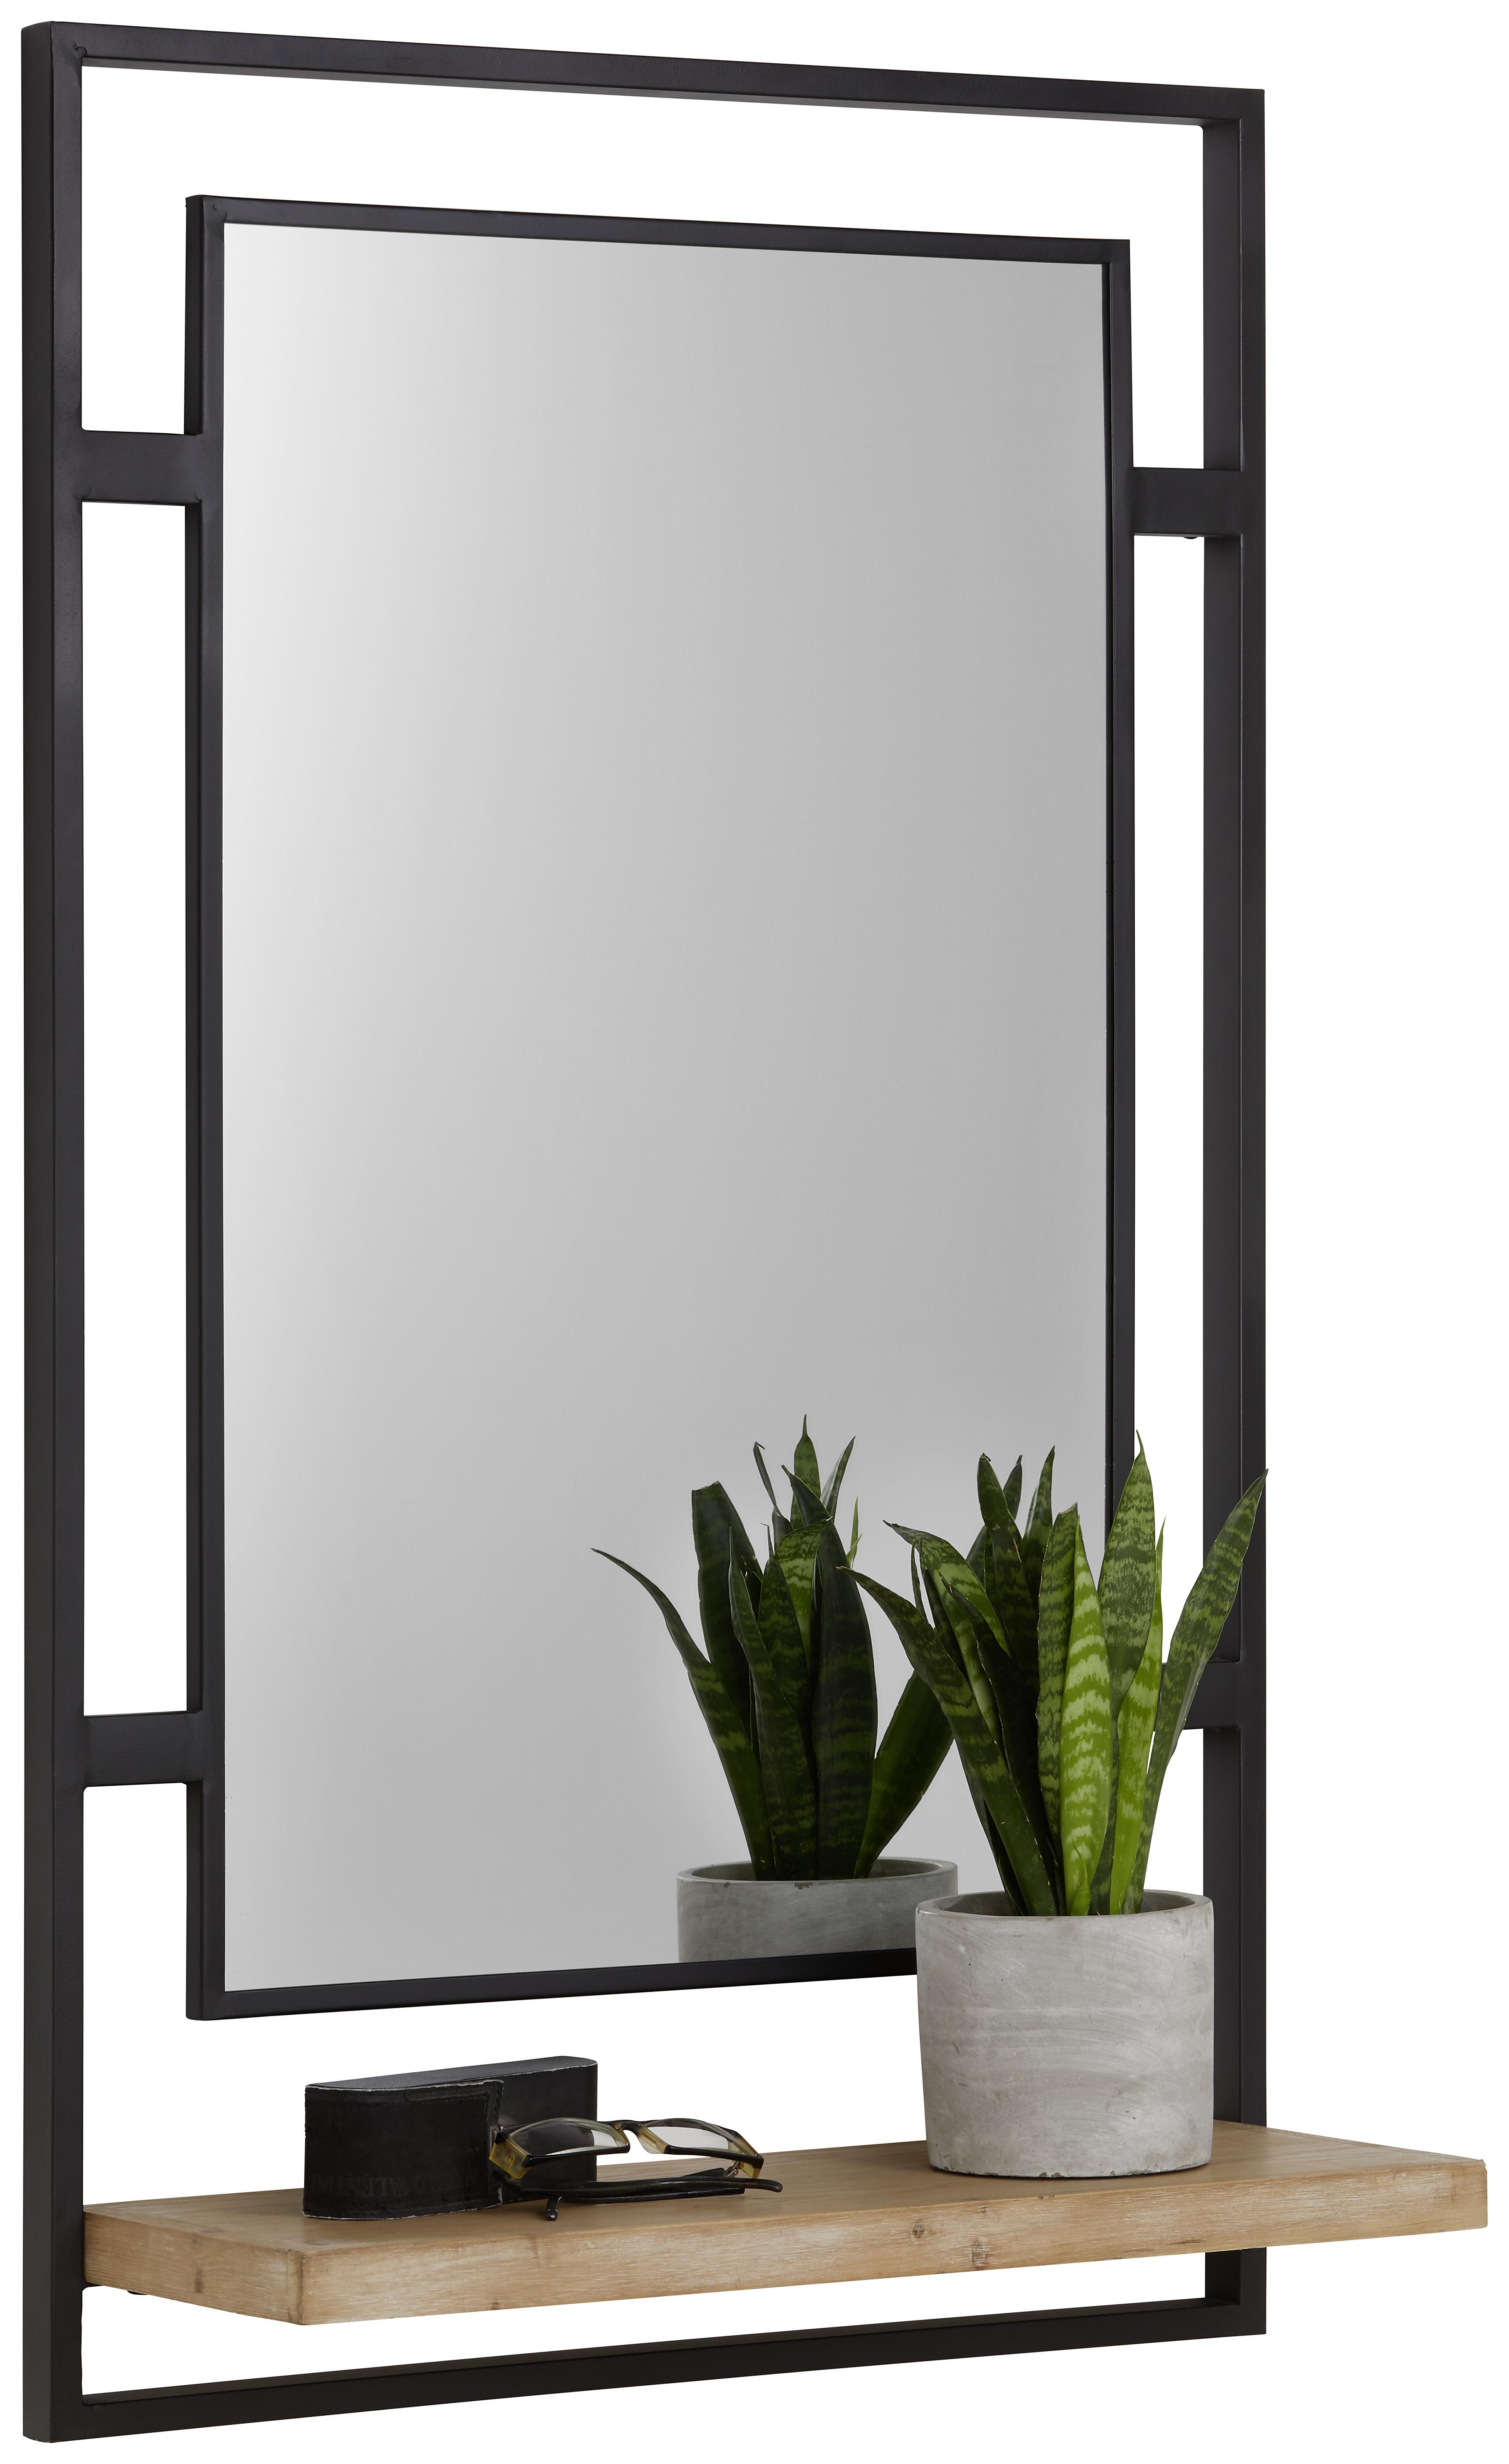 Nástěnné Zrcadlo Jack - černá/přírodní barvy, Lifestyle, kov/dřevo (60/100/22cm) - Premium Living